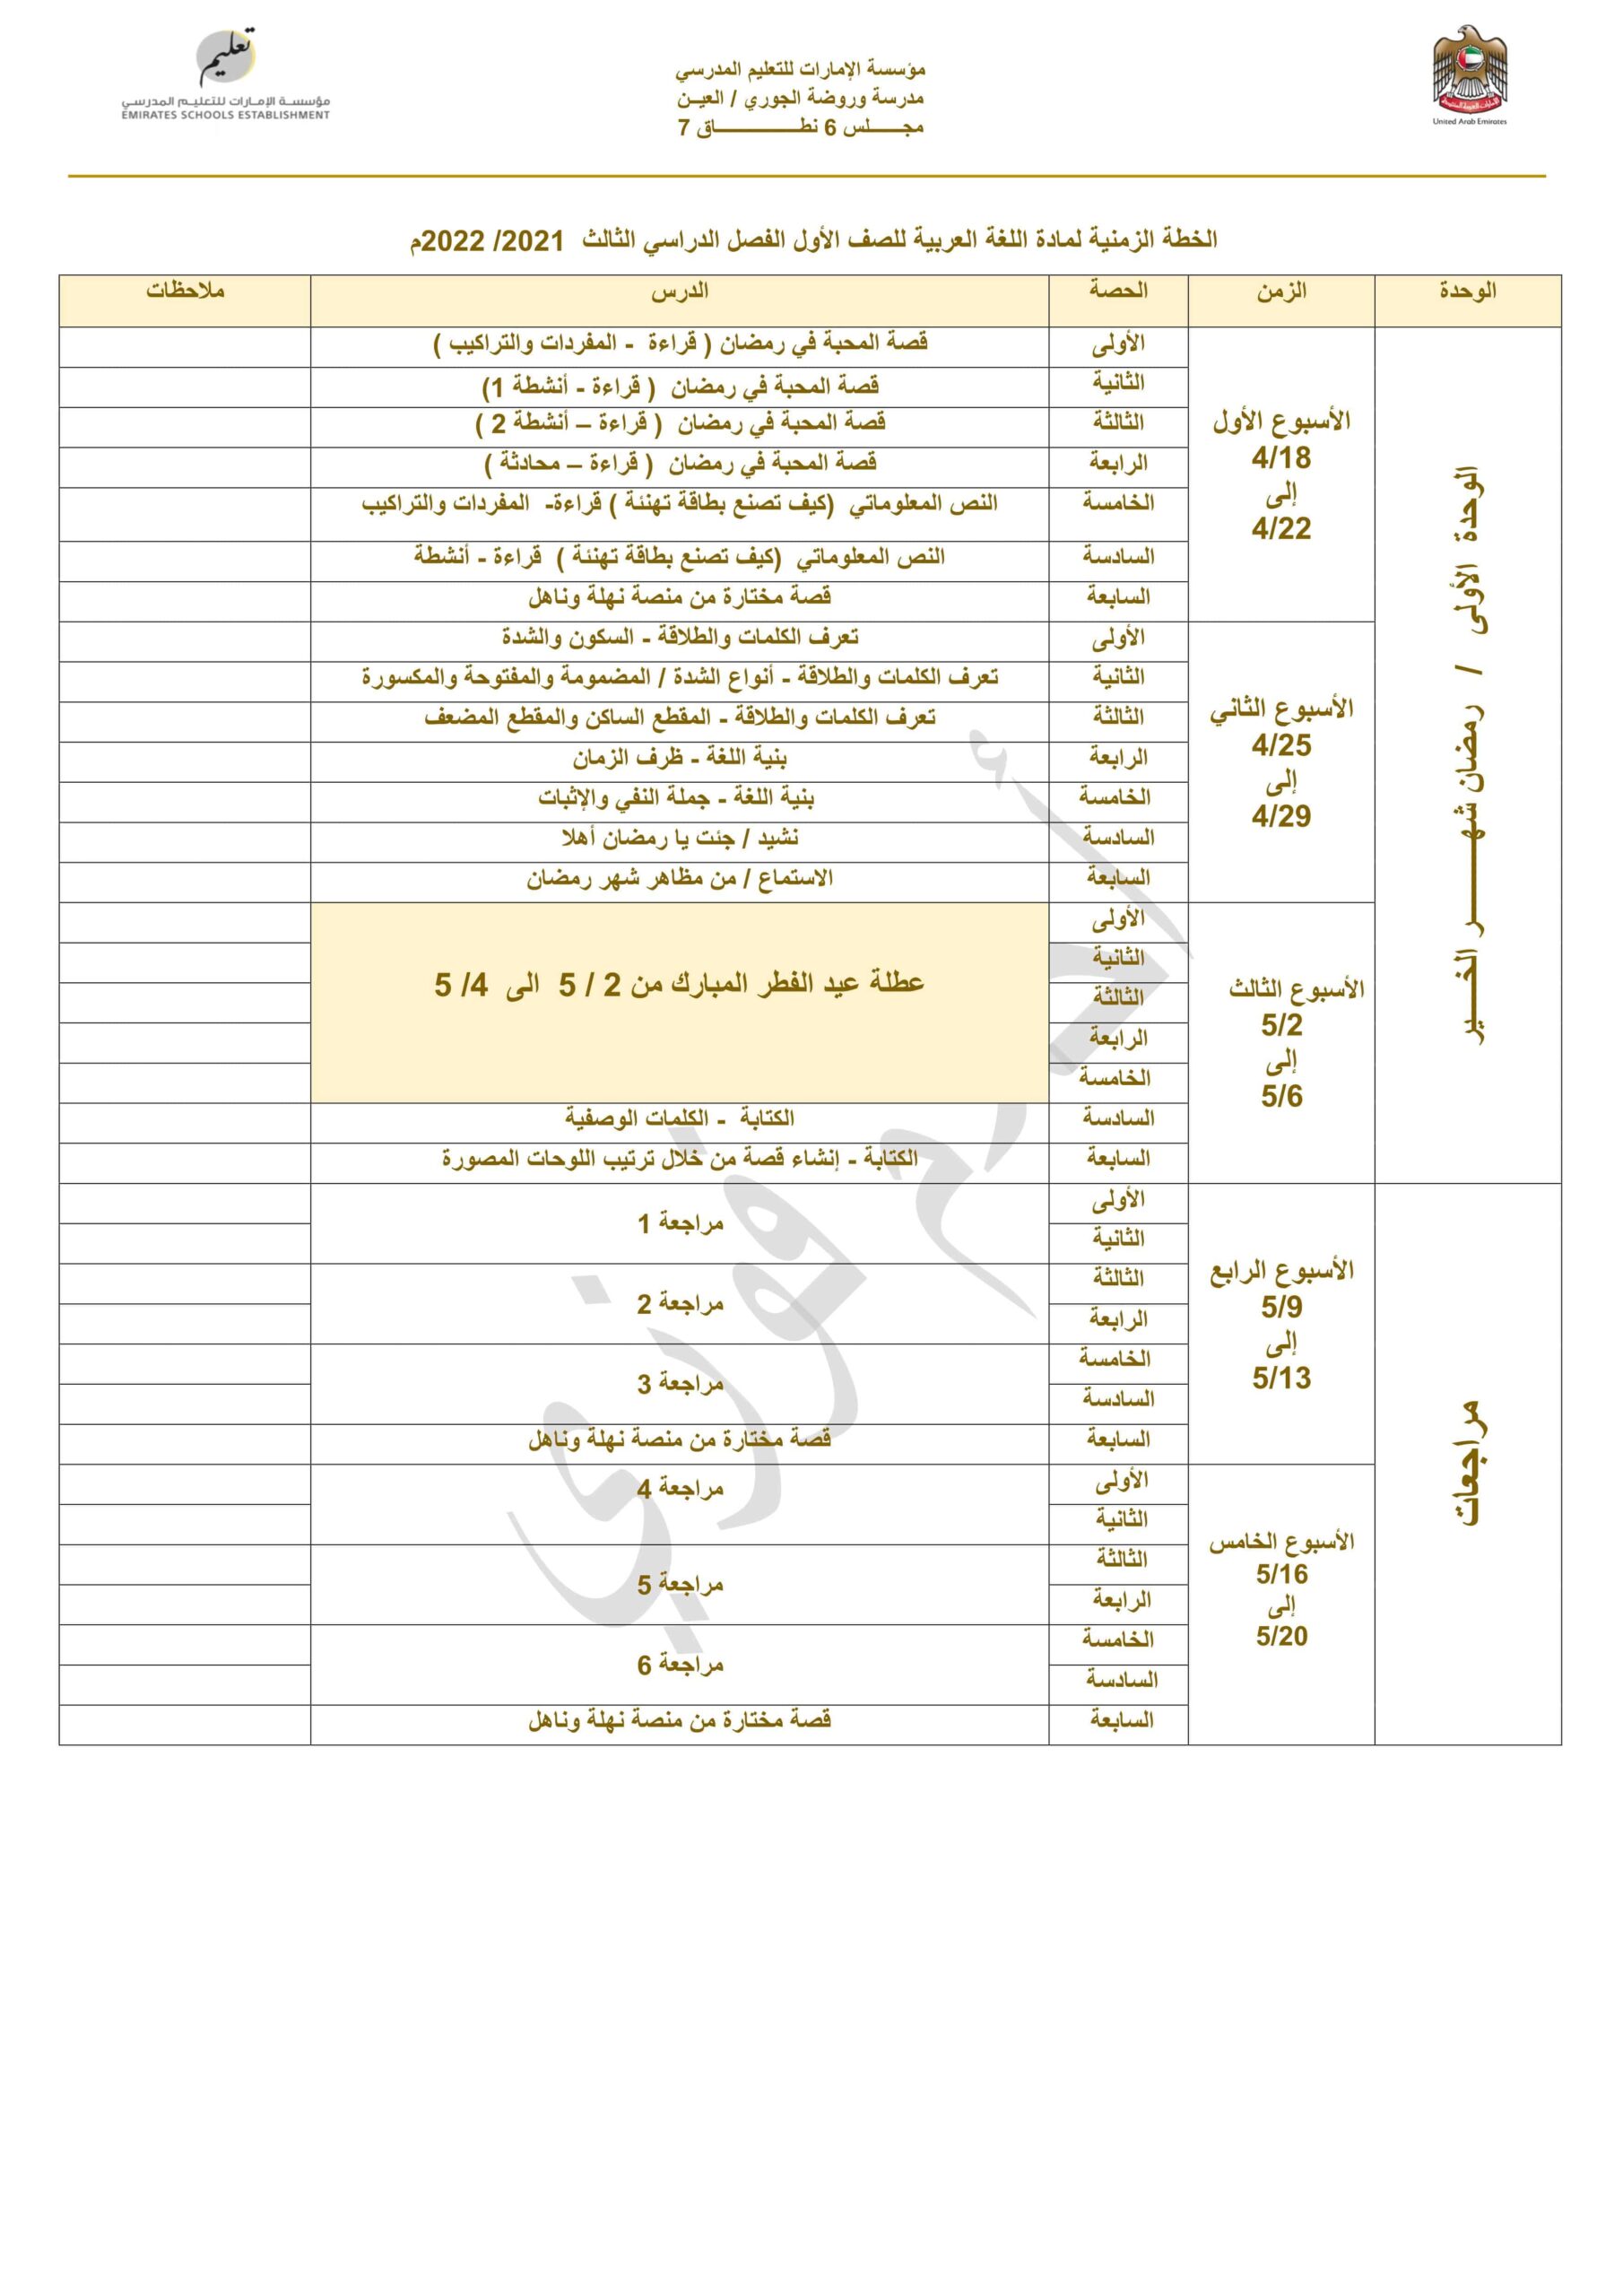 الخطة الزمنية اللغة العربية الصف الأول الفصل الدراسي الثالث 2021 - 2022